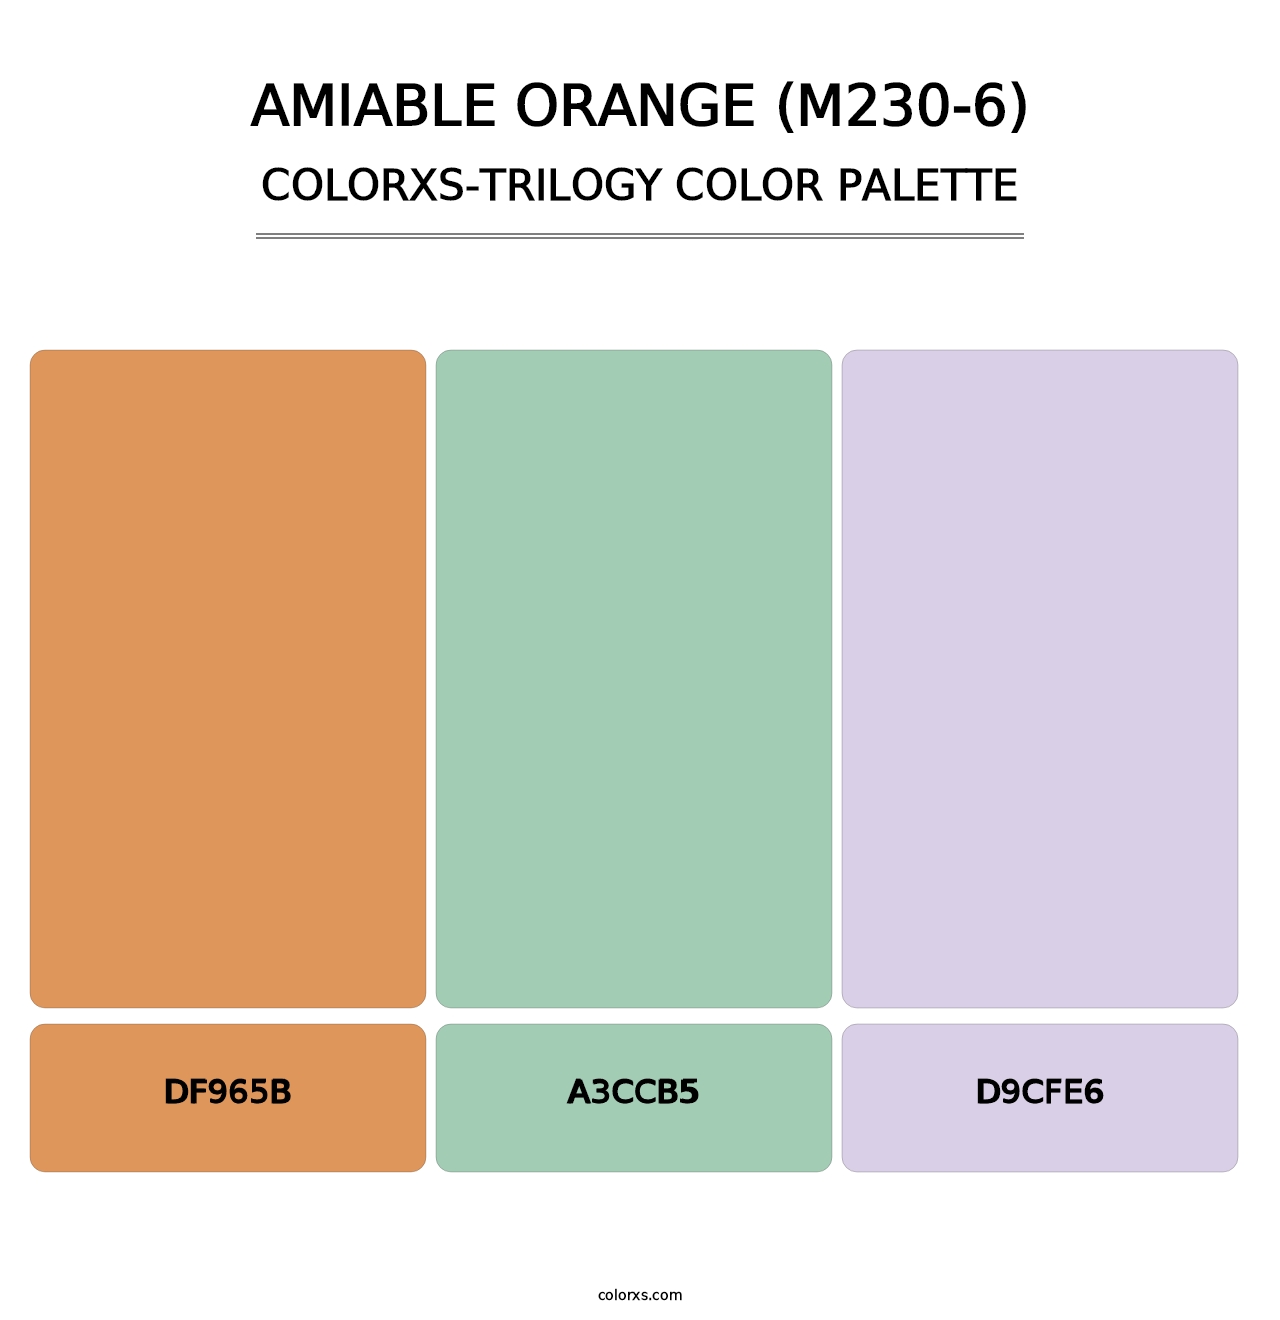 Amiable Orange (M230-6) - Colorxs Trilogy Palette